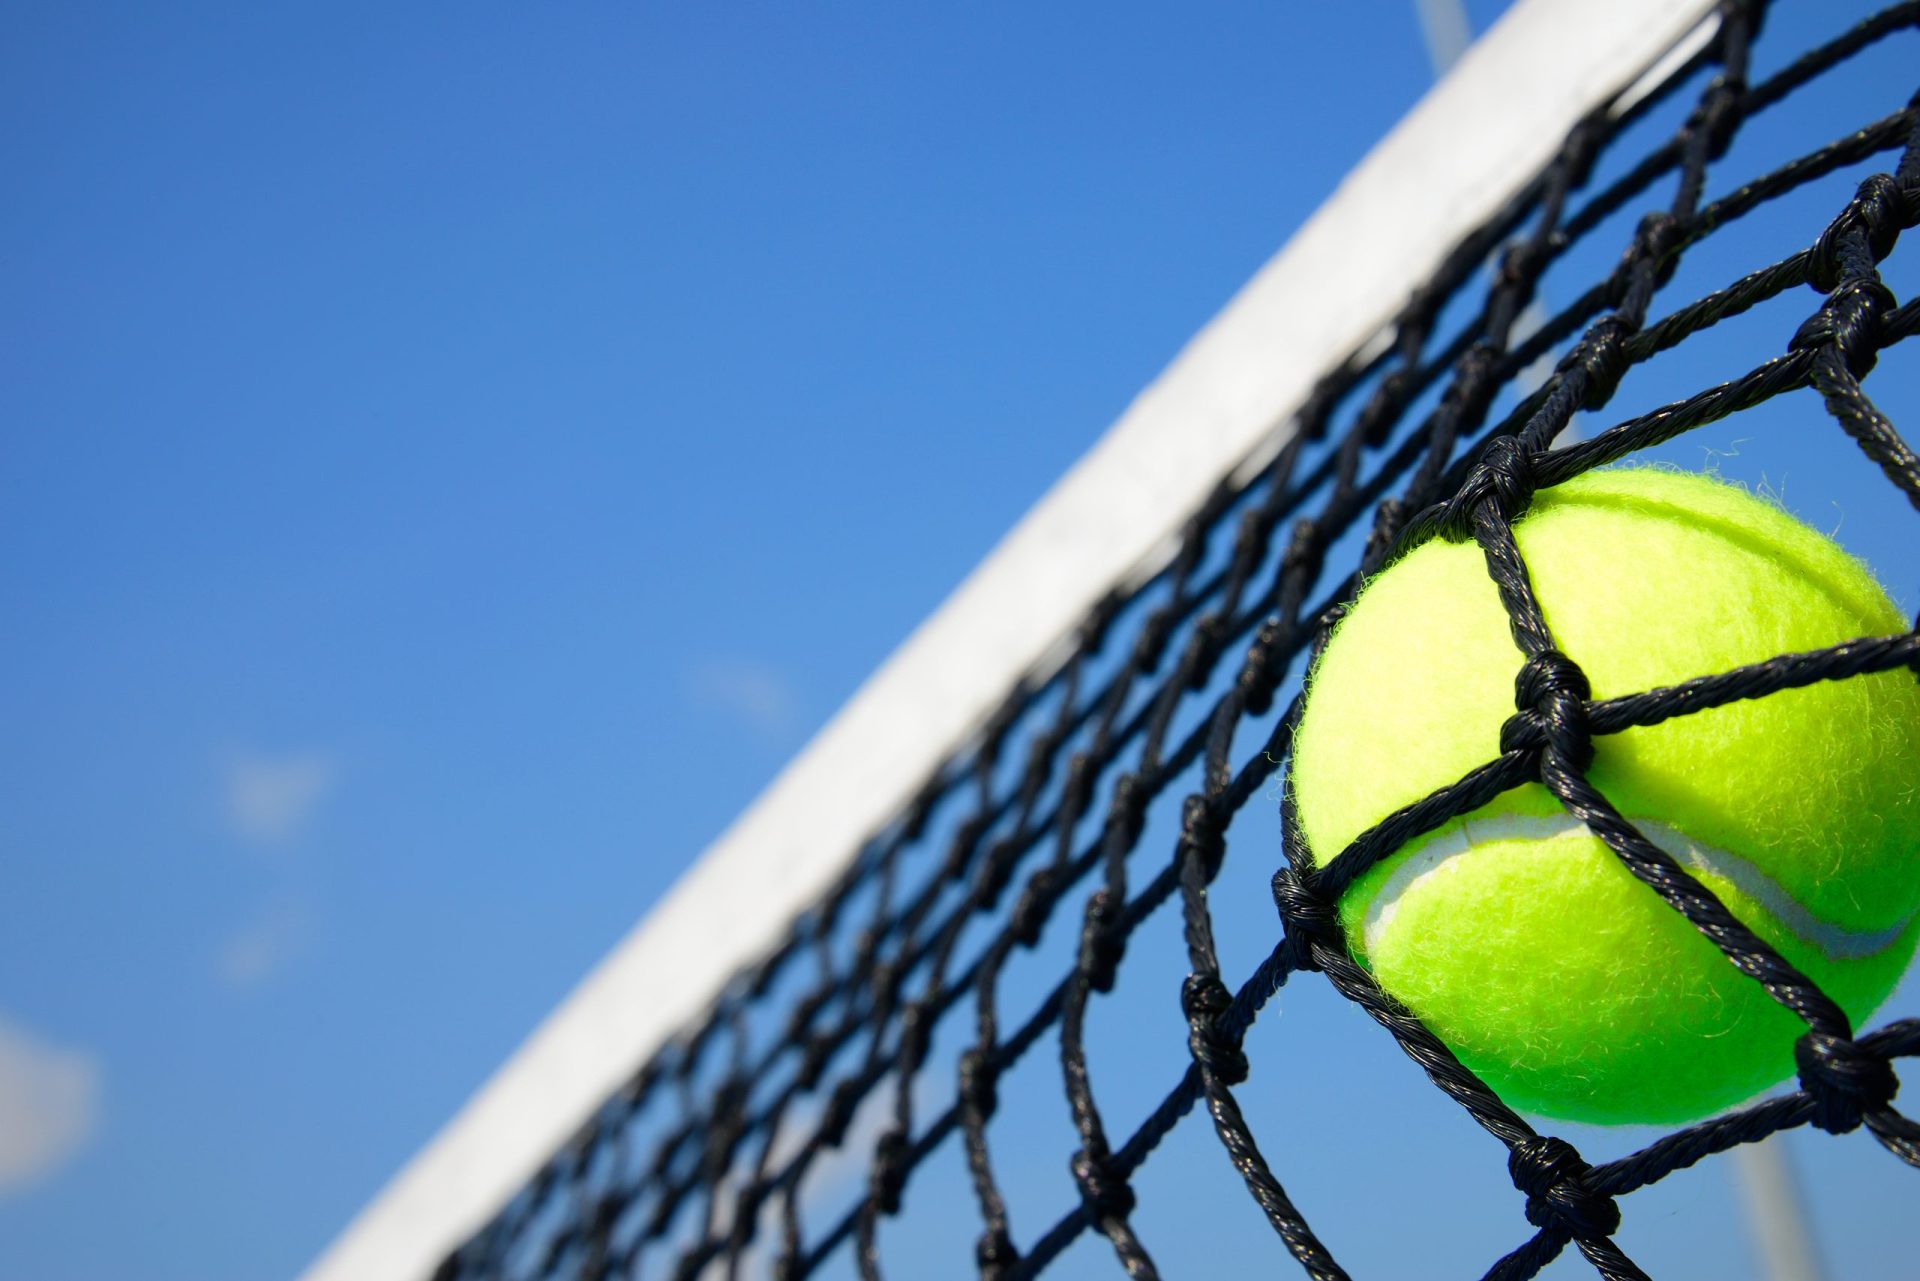 Apostas legais no ténis valem 7,8 milhões de euros por ano